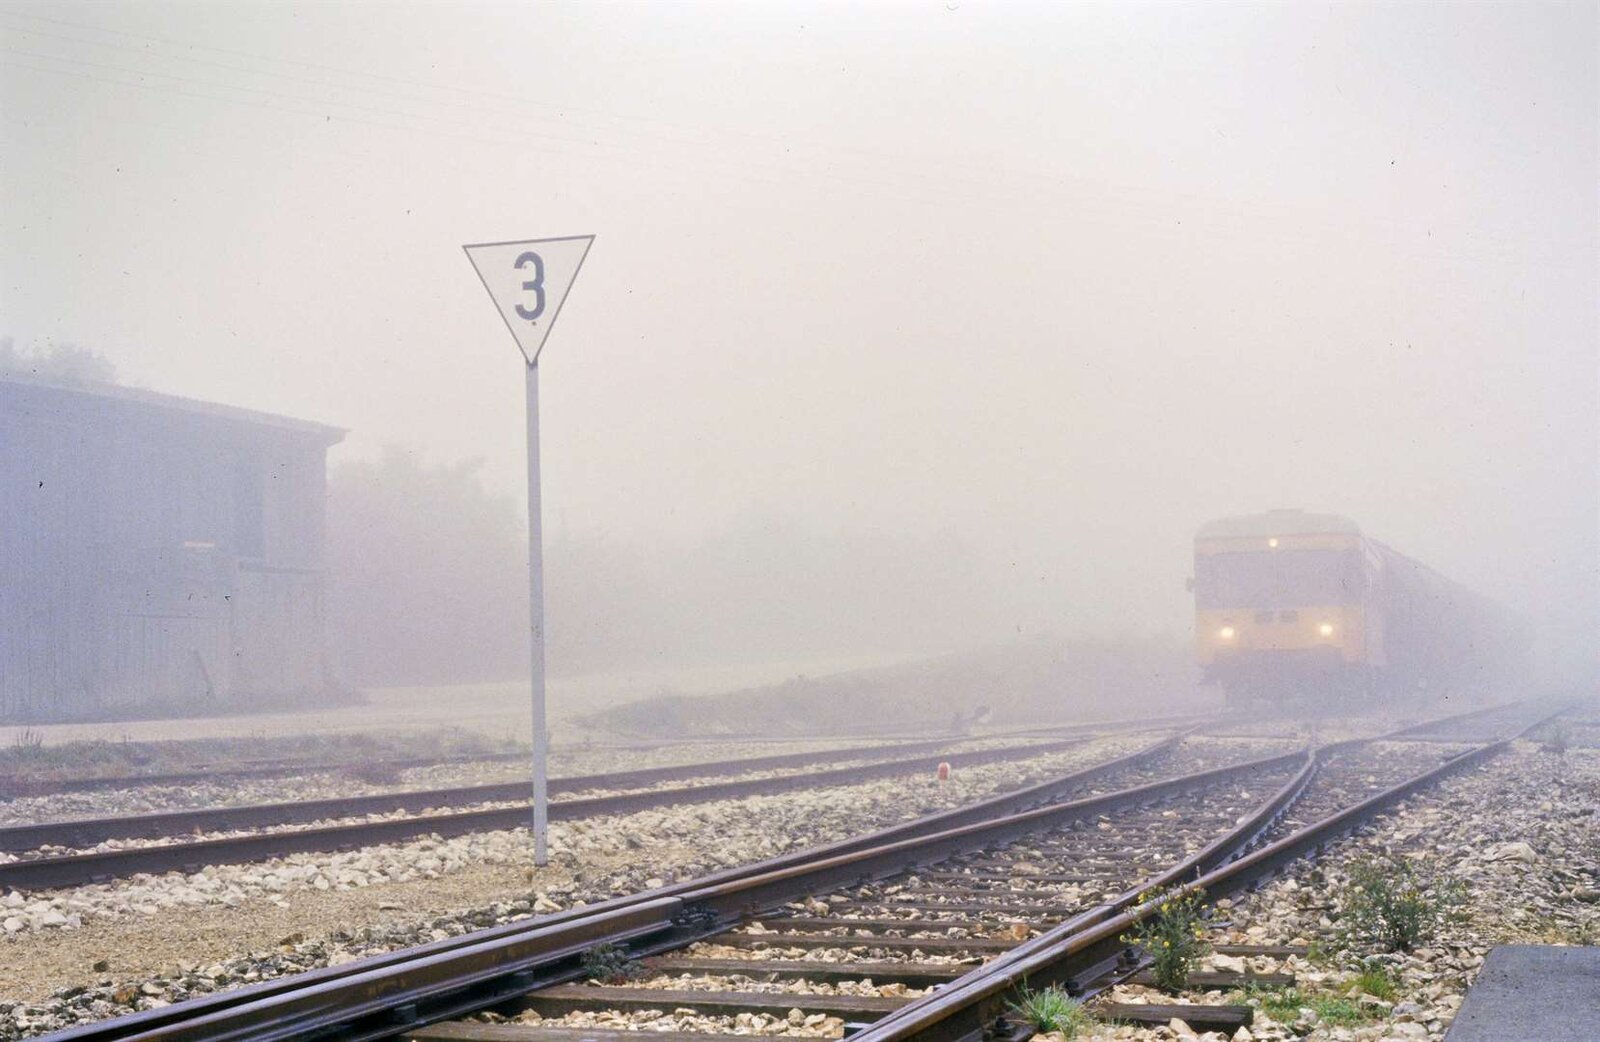 So viel Nebel war am Bahnhof Gerstetten wohl noch nie...
Wagen T 05 rangierte am 02.11.1984 dort nur sehr langsam, und auch die Fahrt nach Amstetten dauerte länger.